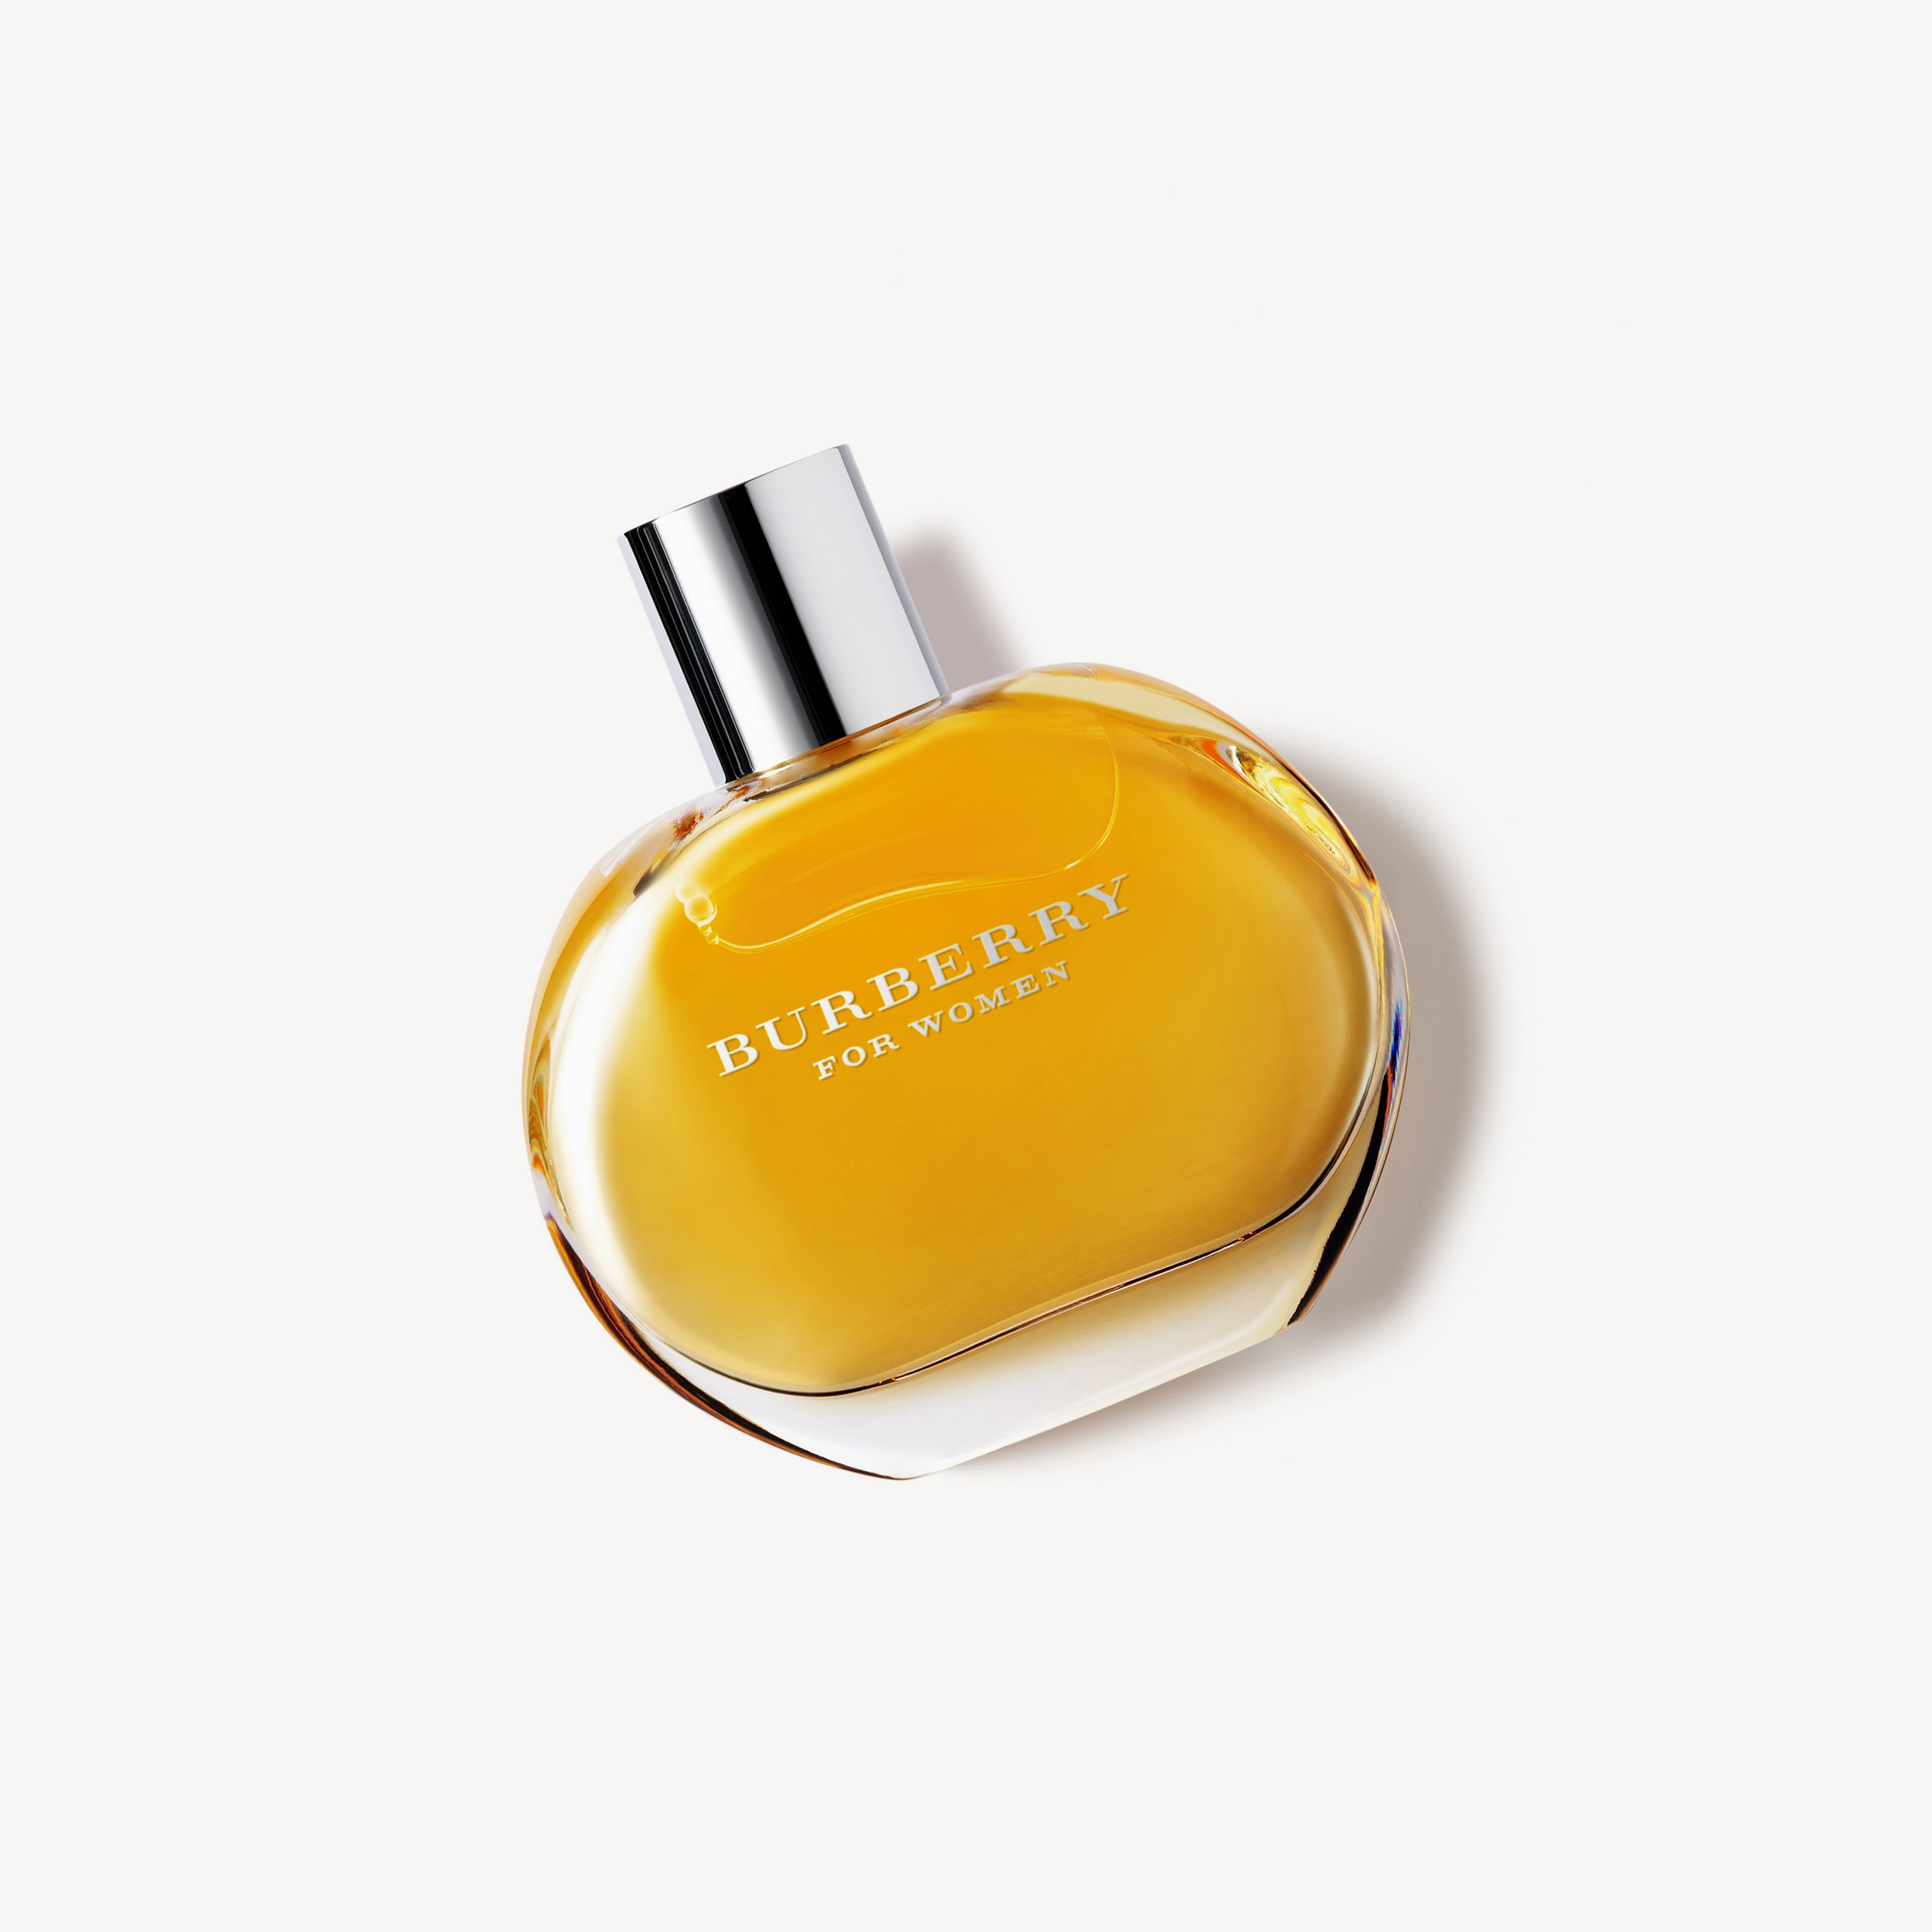 Burberry For Women Eau de Parfum de 100 ml - Mujer | Burberry® oficial - 1